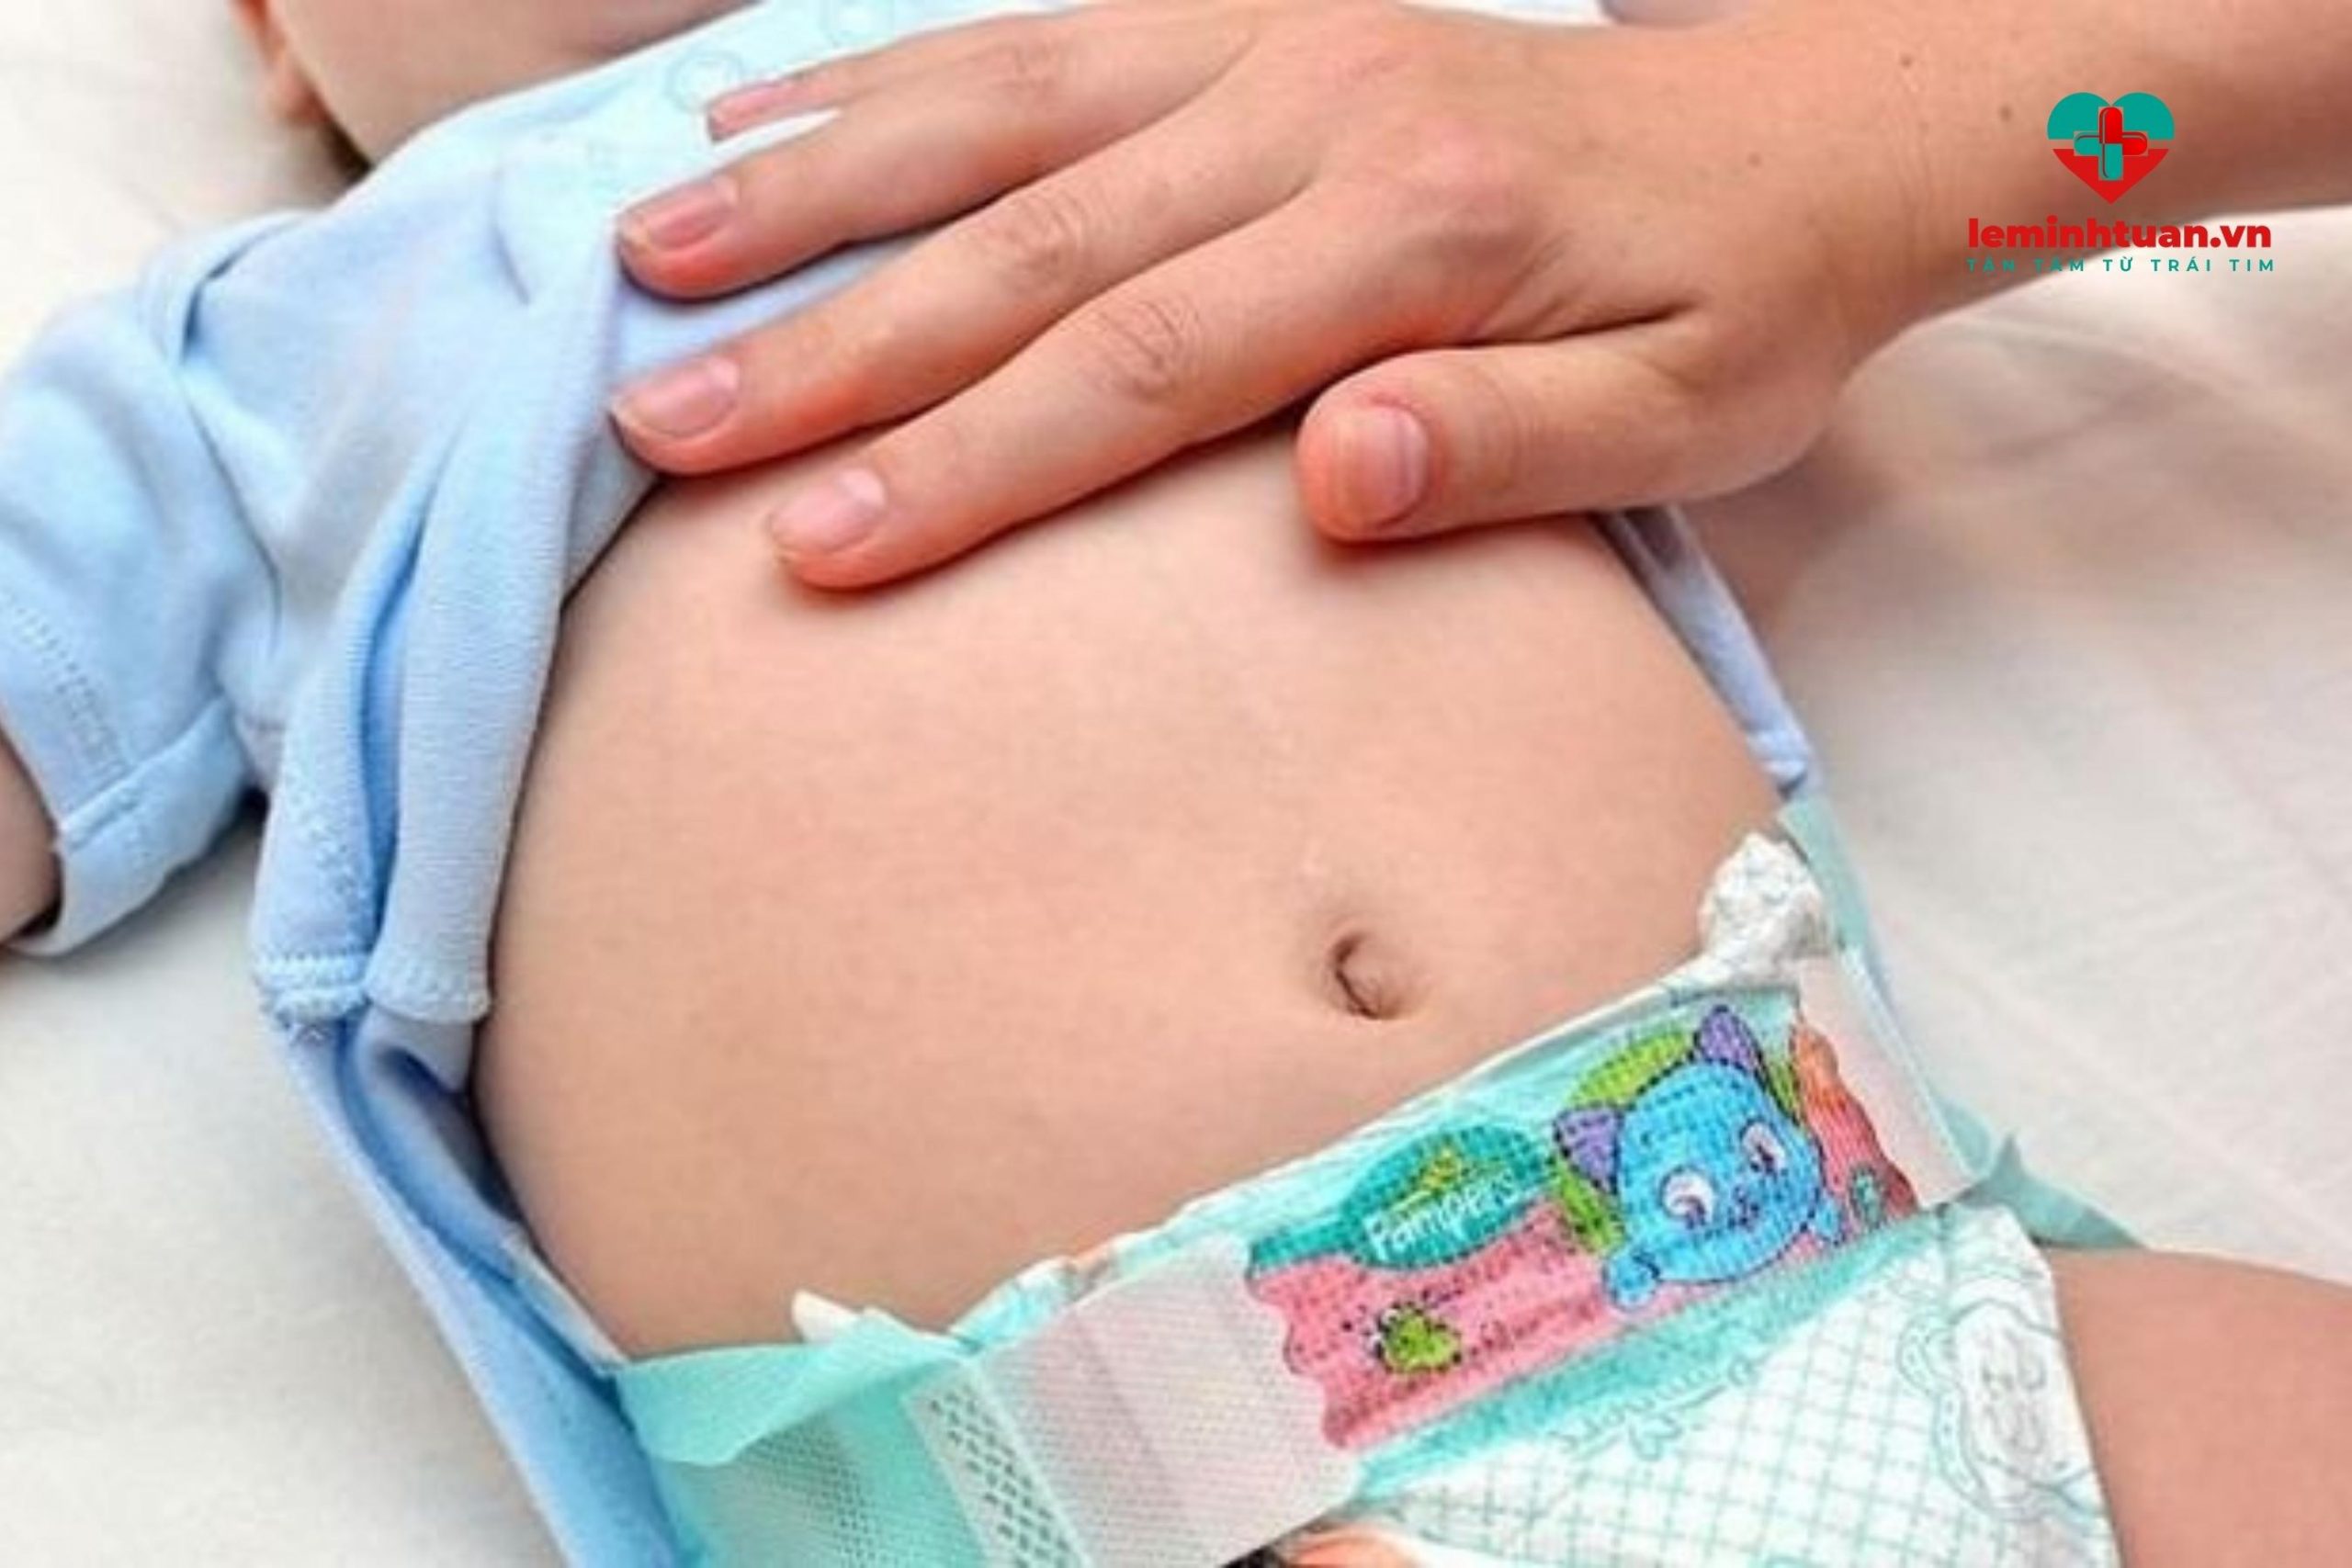 Trẻ bụng phình to sau khi ăn do bệnh lý